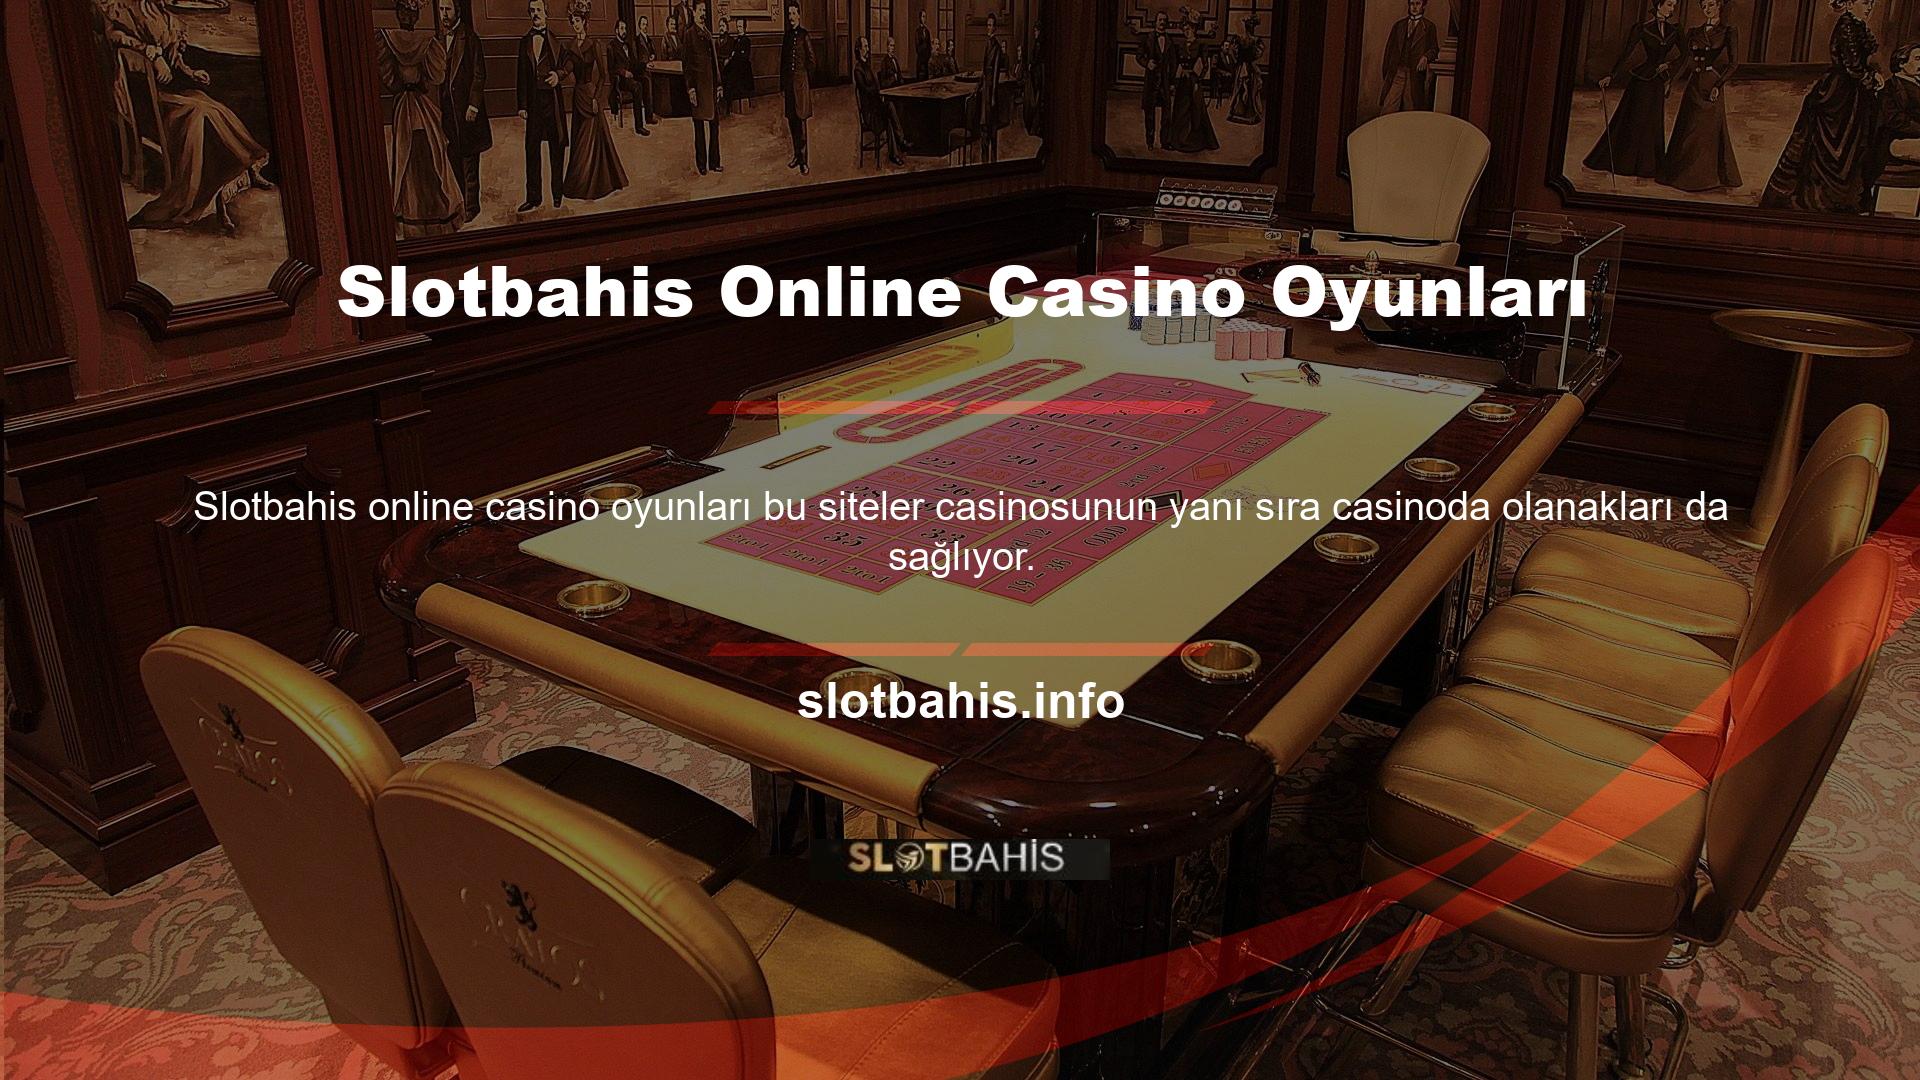 Türkiye’de casino oyunları oynamak için Slotbahis sitesine üye olmanız ve mevcut giriş bilgilerinizi kullanarak beğendiğiniz oyunlara erişmeniz gerekmektedir Slotbahis casino oyunları hizmeti, kullanıcıların çeşitli türlerde slot ve canlı casino oyunları oynamasına olanak tanır